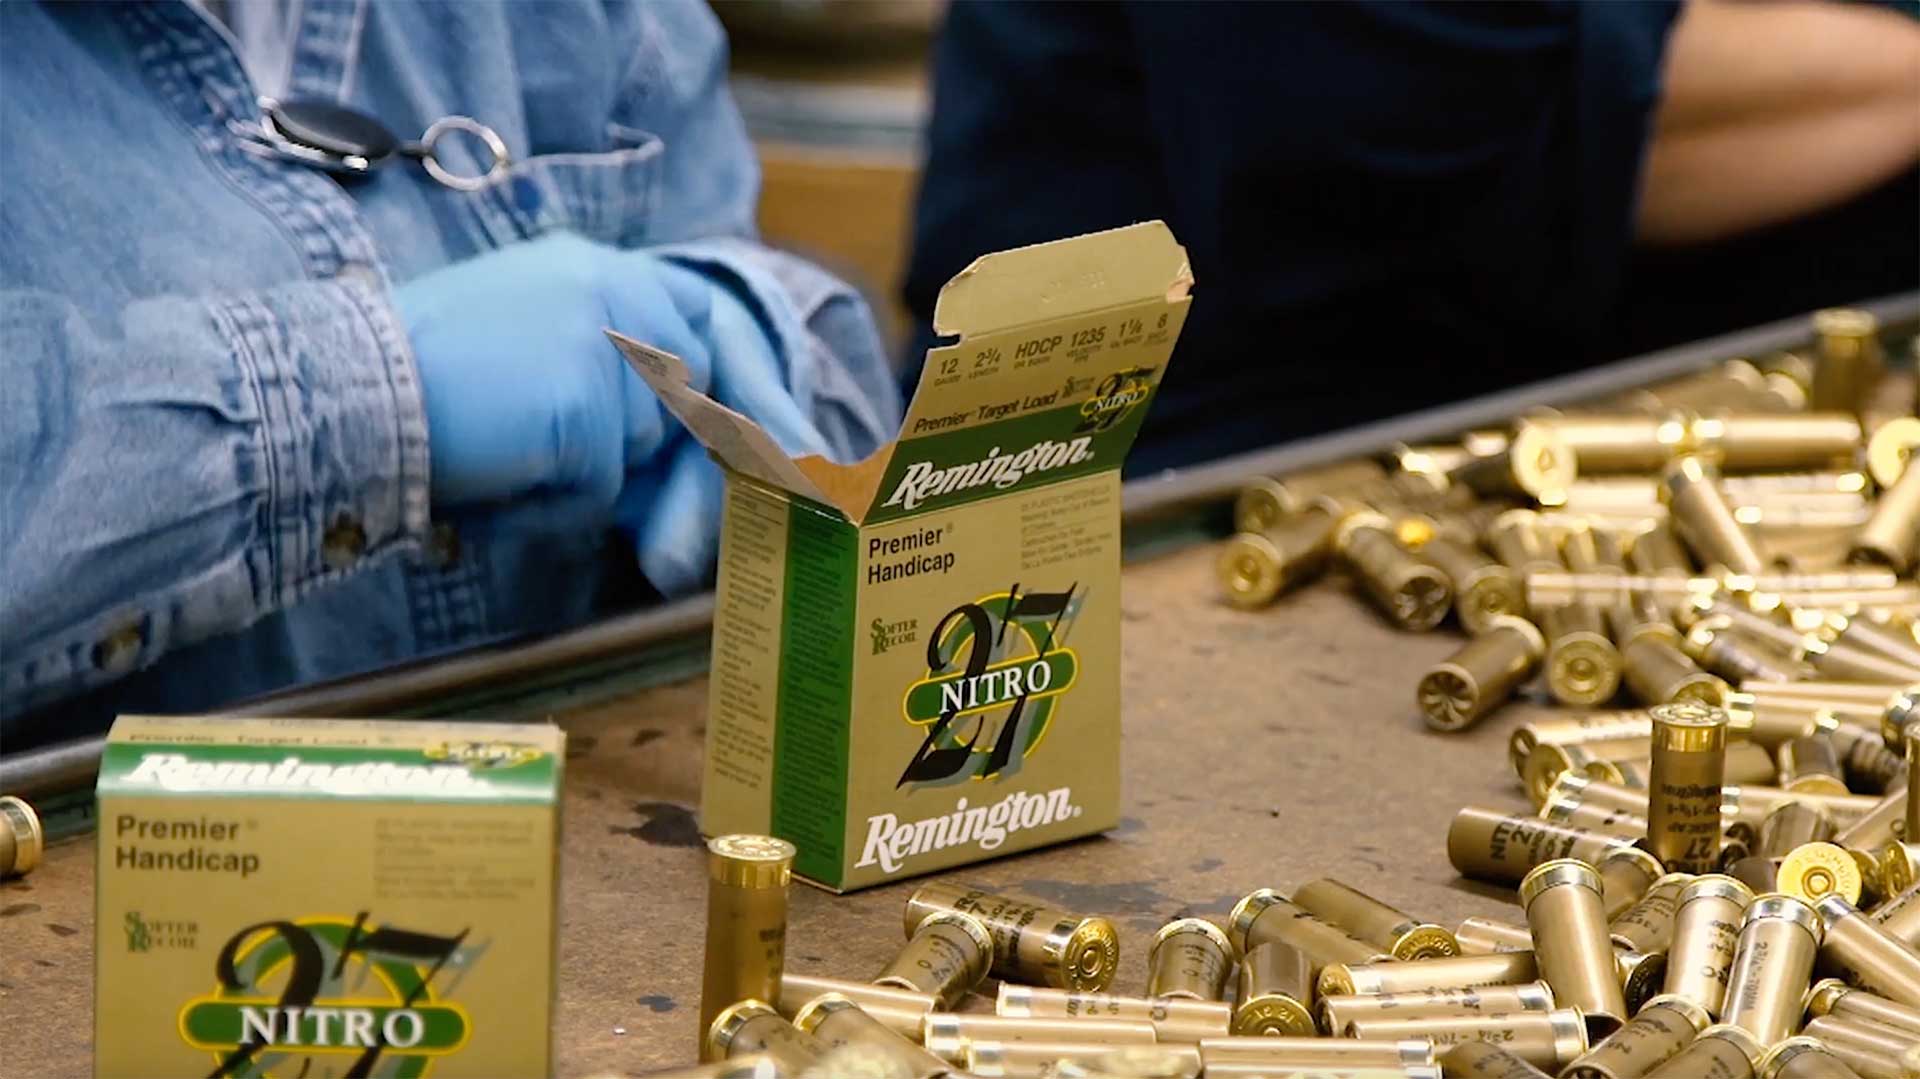 Remington Nitro 12 Gauge Shotgun Shells Gold Hulls Used Casings